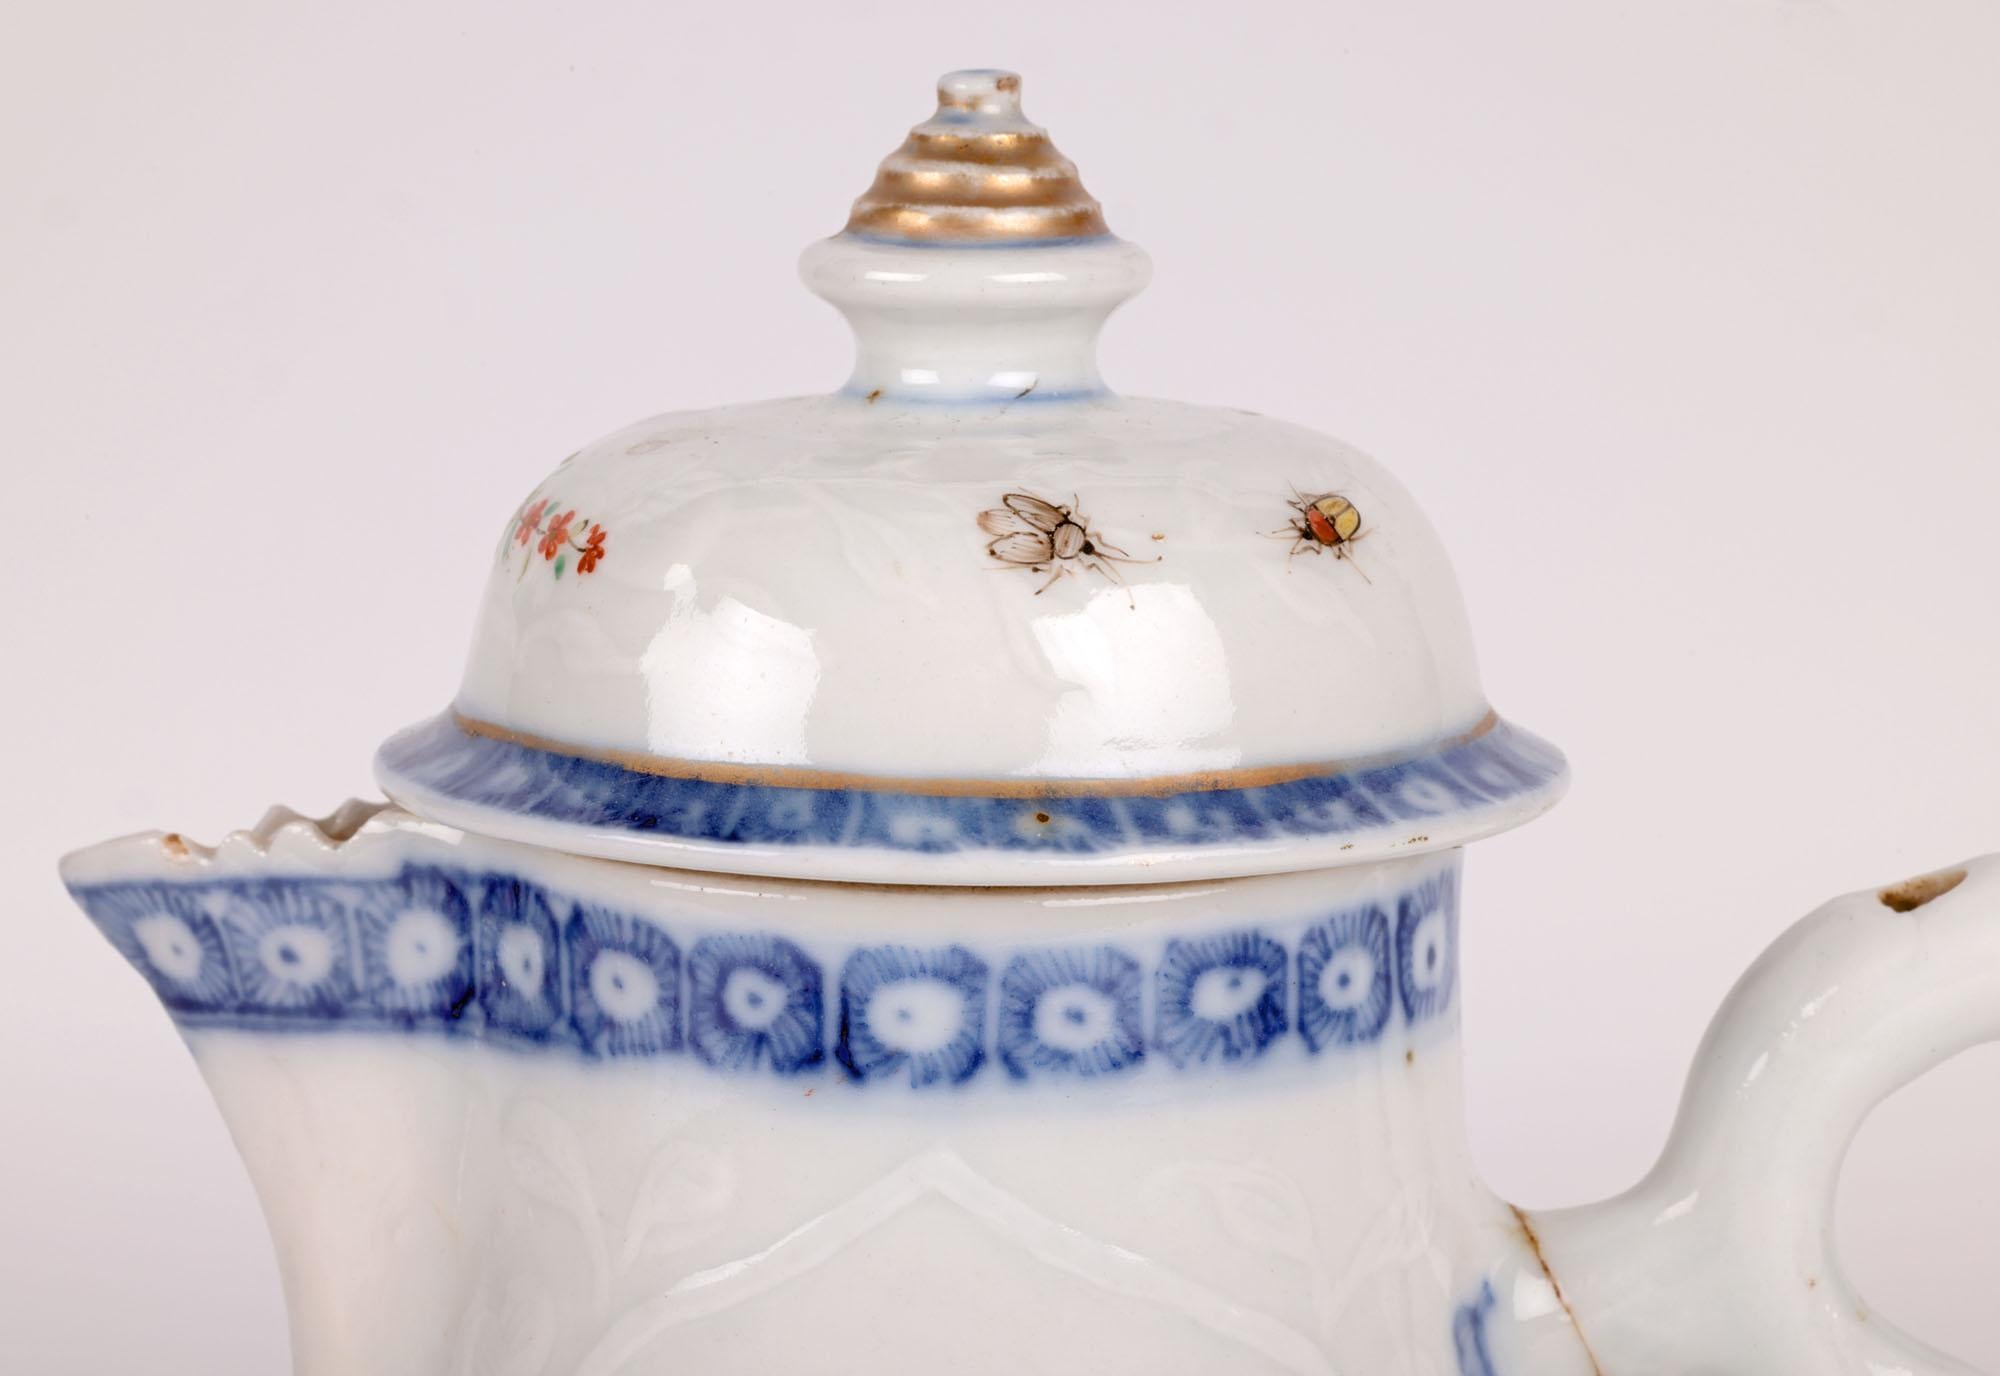 Eine ungewöhnliche chinesische Kangxi-Periode (1662-1722) Porzellankanne mit Deckel und Henkel, die mit Blumen geprägt und im europäischen Stil handbemalt ist. Der Krug steht auf einem schmalen, runden Fuß, hat einen runden, bauchigen Körper und